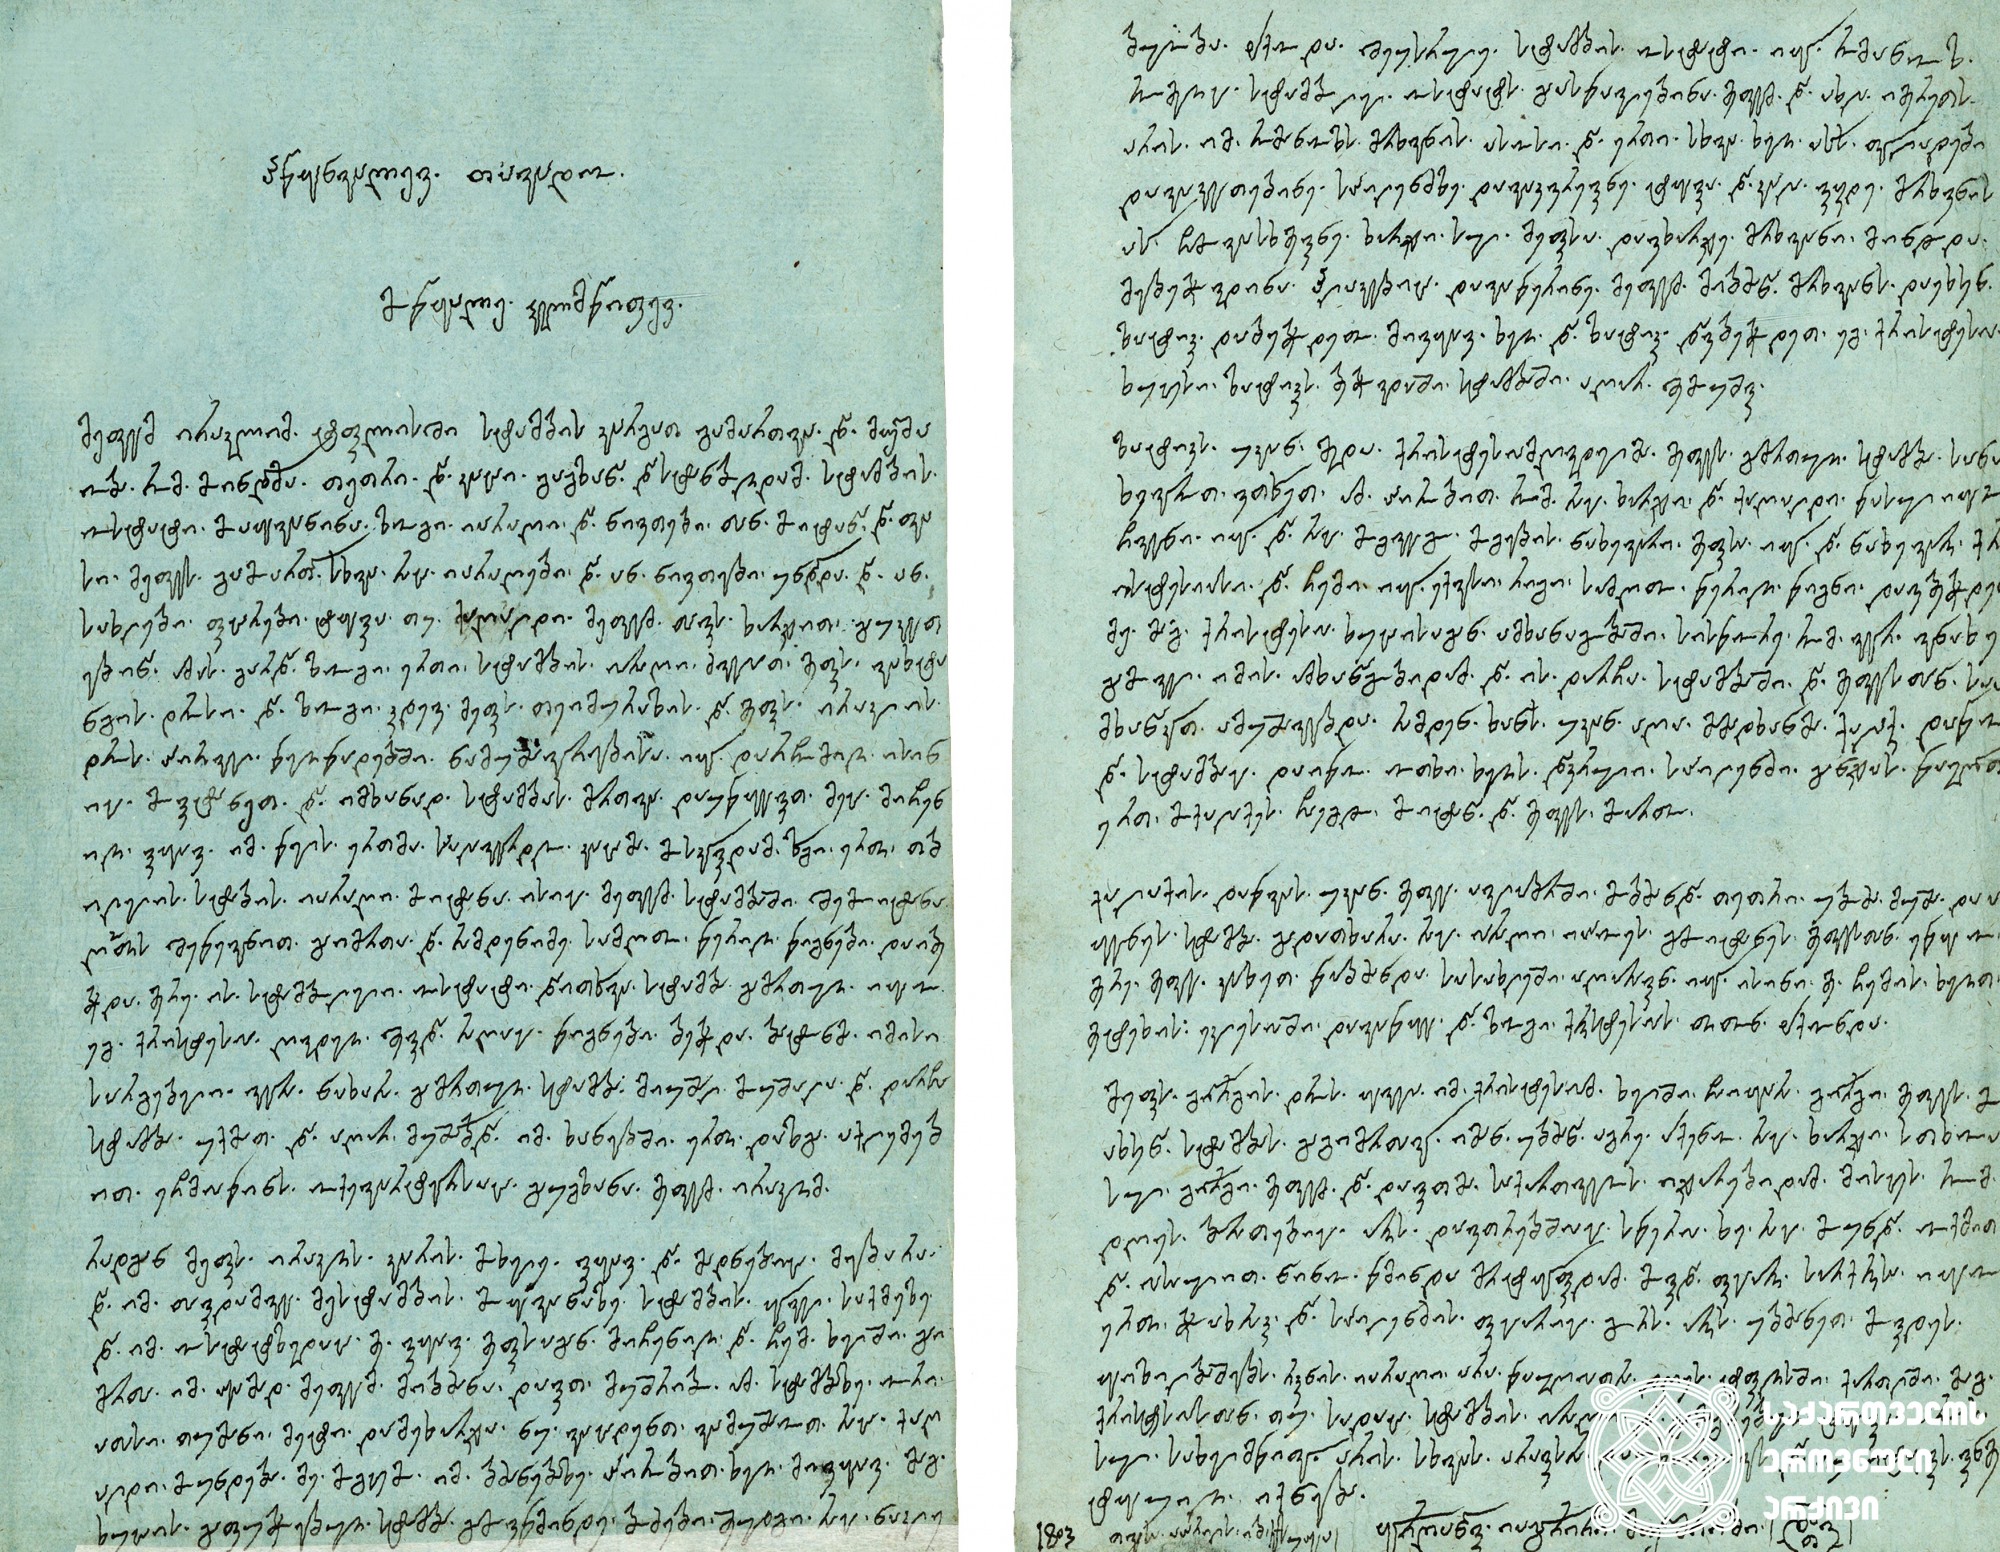 მუშრიბ დავით ყორღანაშვილის წერილი თავად ციციანოვთან ერეკლე II-ის მიერ თბილისში სტამბის დაარსების, მისი ფუნქციონირების, რამდენიმეგზის აღდგენის, საბოლოოდ დაშლის შესახებ <br>
1803 წელი, 12 აპრილი<br>
Letter of Mushrib DAviT Korghanashvili to Tavadi Tsitsianov about founding the Printing House in Tbilisi by King Erekle II <br>
12 April, 1803